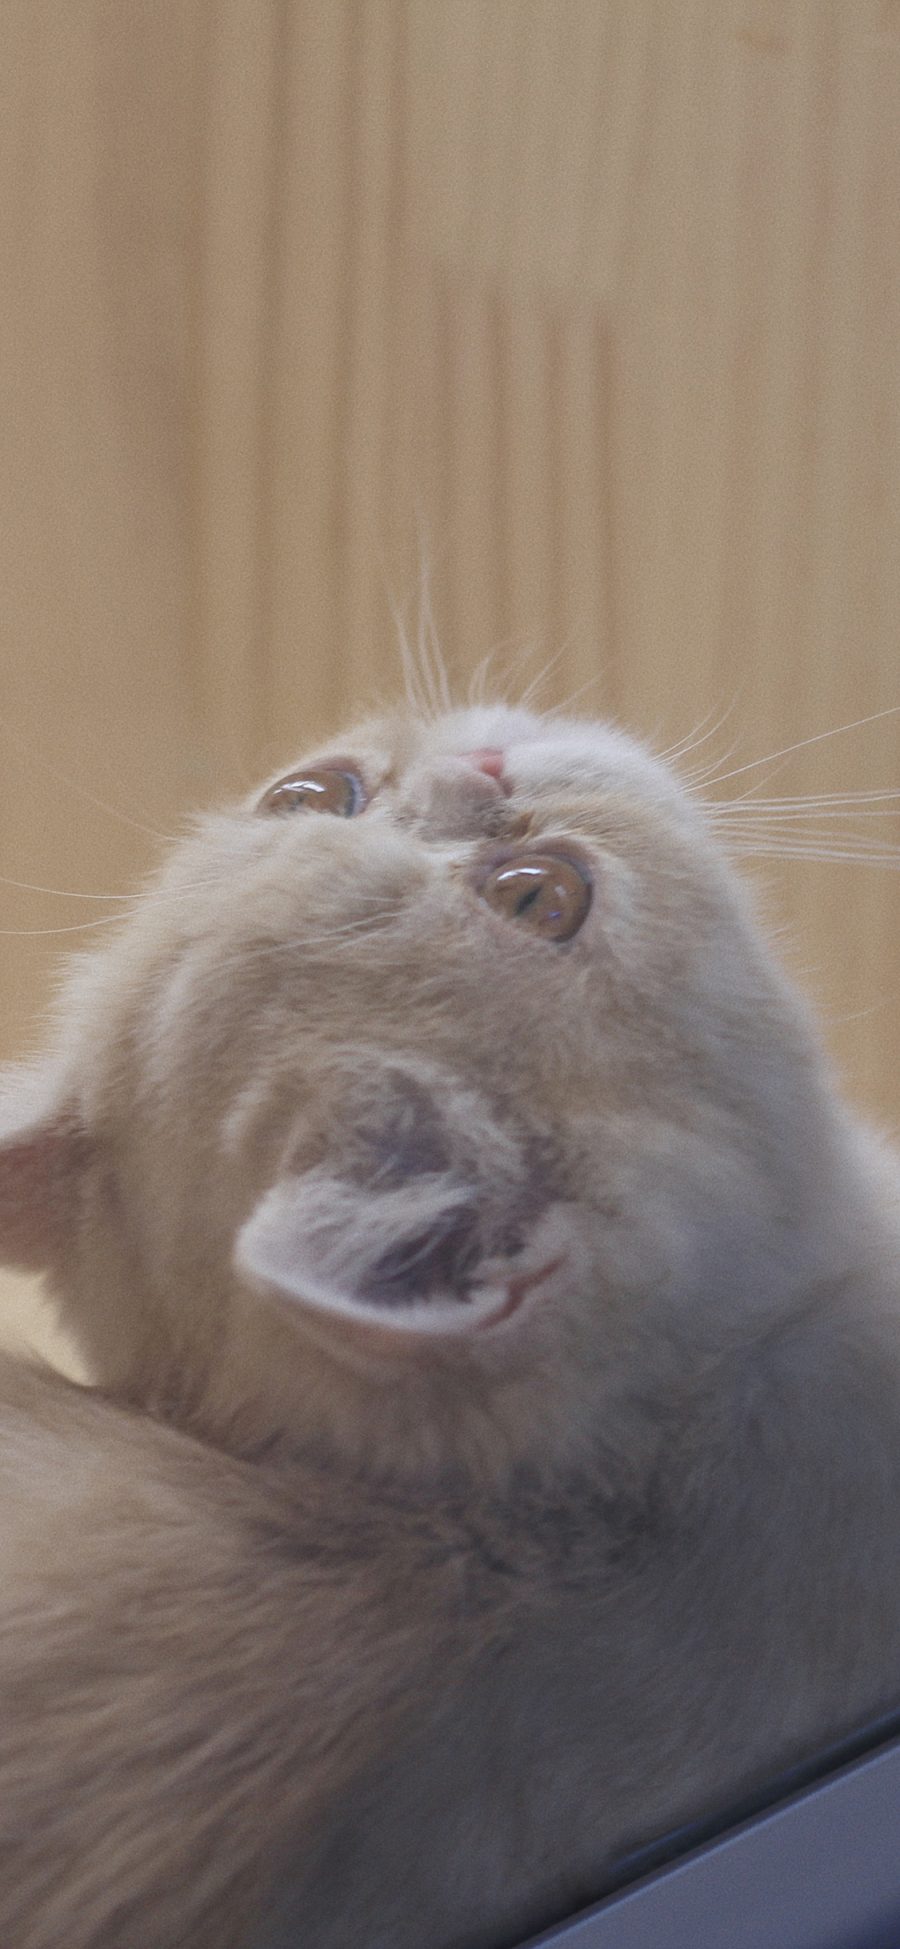 [2436×1125]猫咪 喵星人 宠物 仰头 可爱 苹果手机壁纸图片